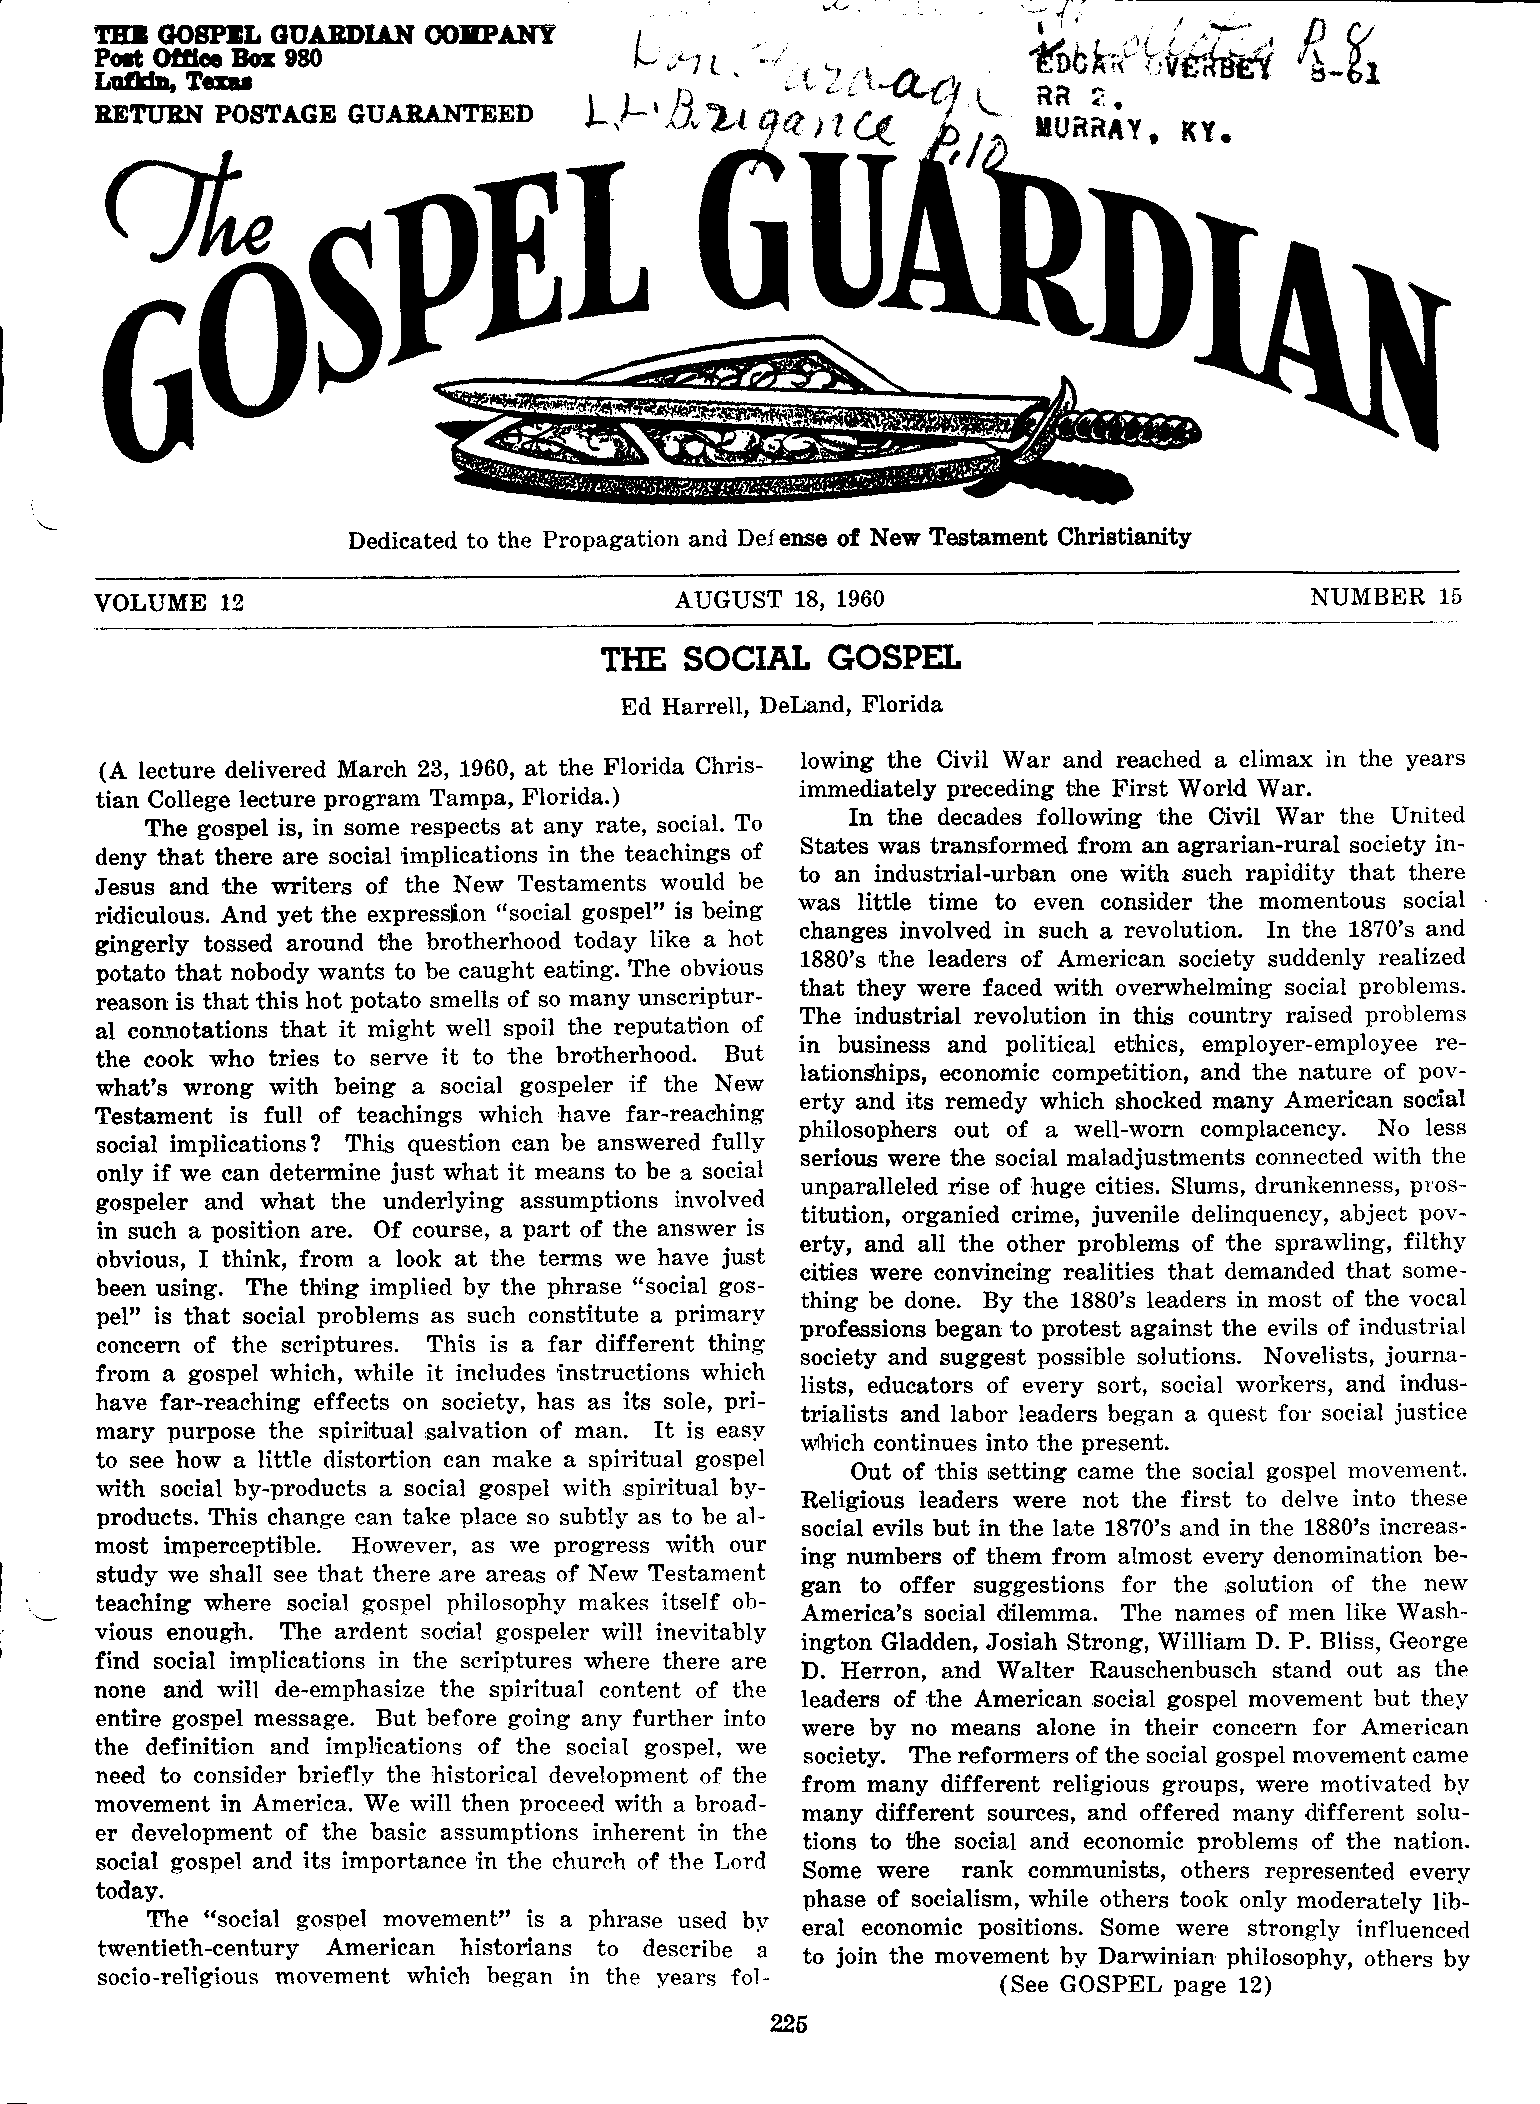 Gospel Guardian Original: Vol.12 No.15 Pg.1